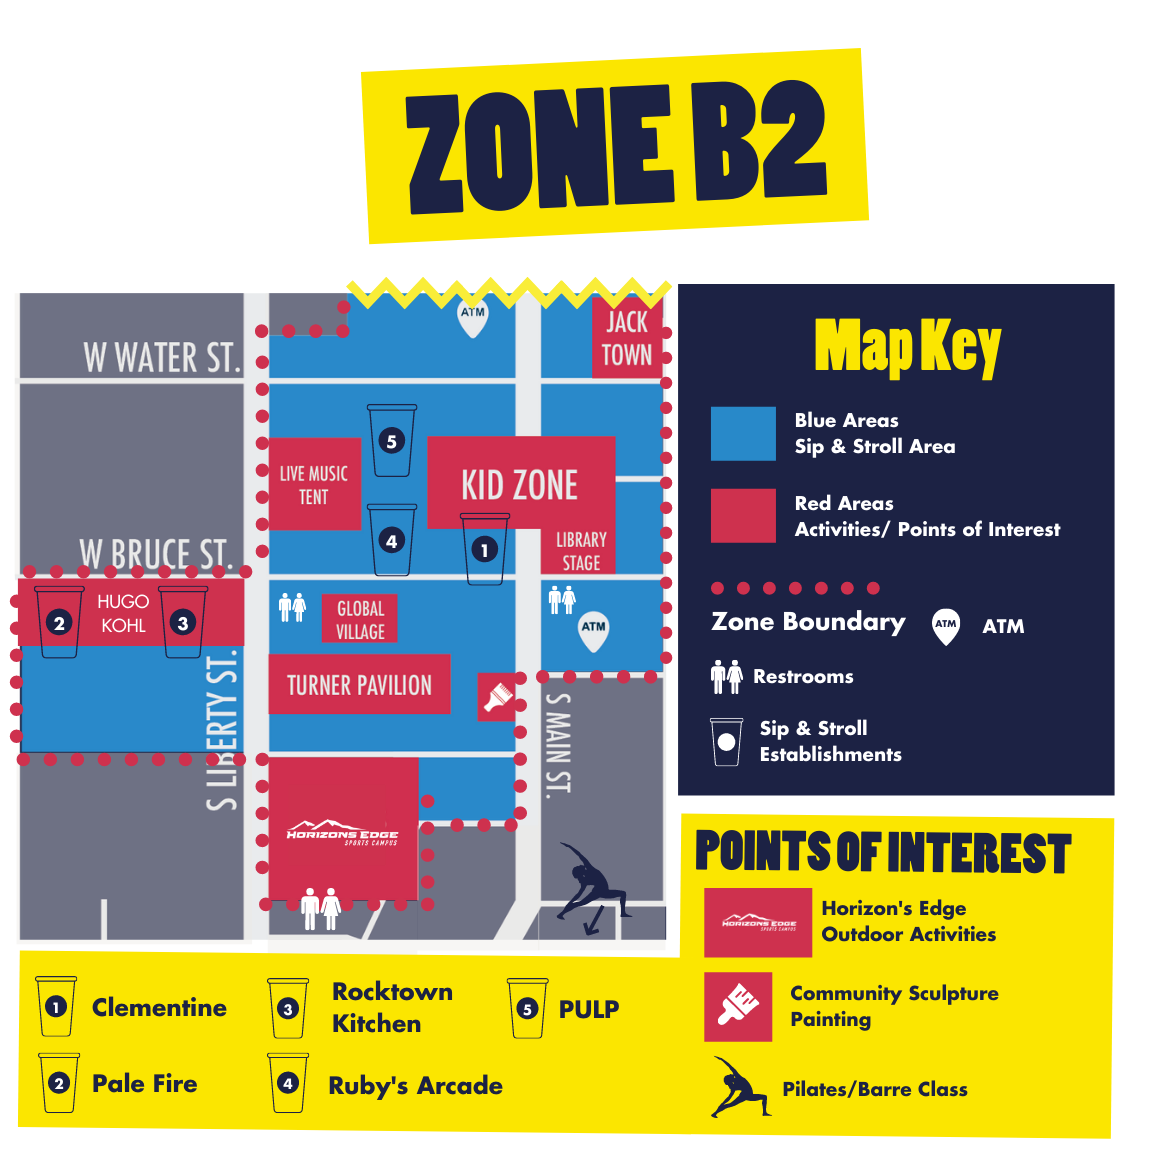 Zone B2